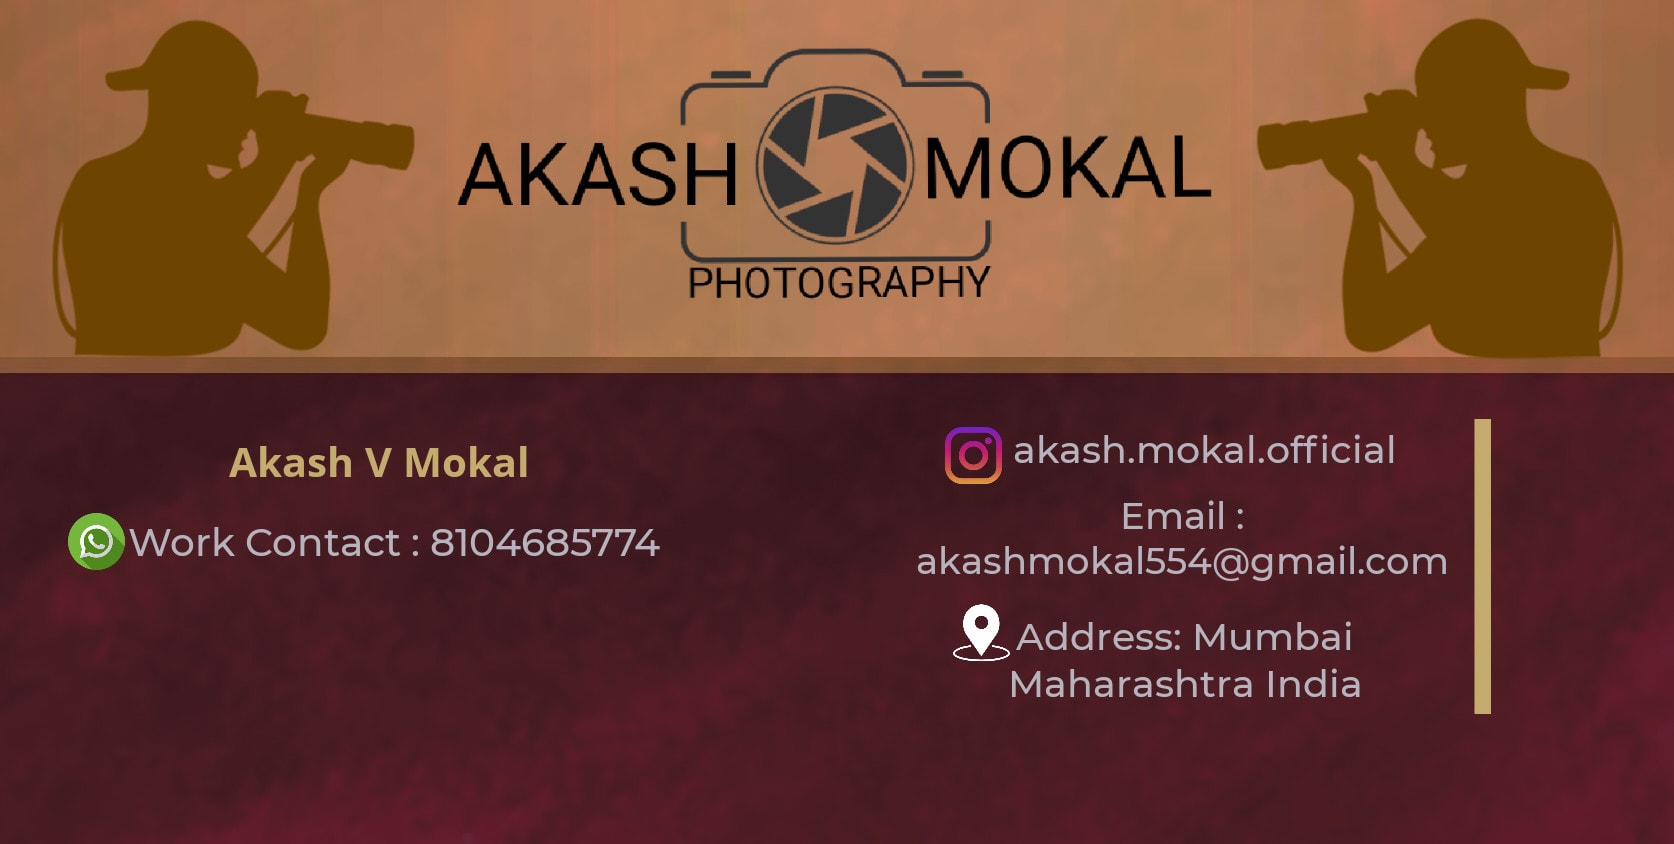 Akash Mokal Photography